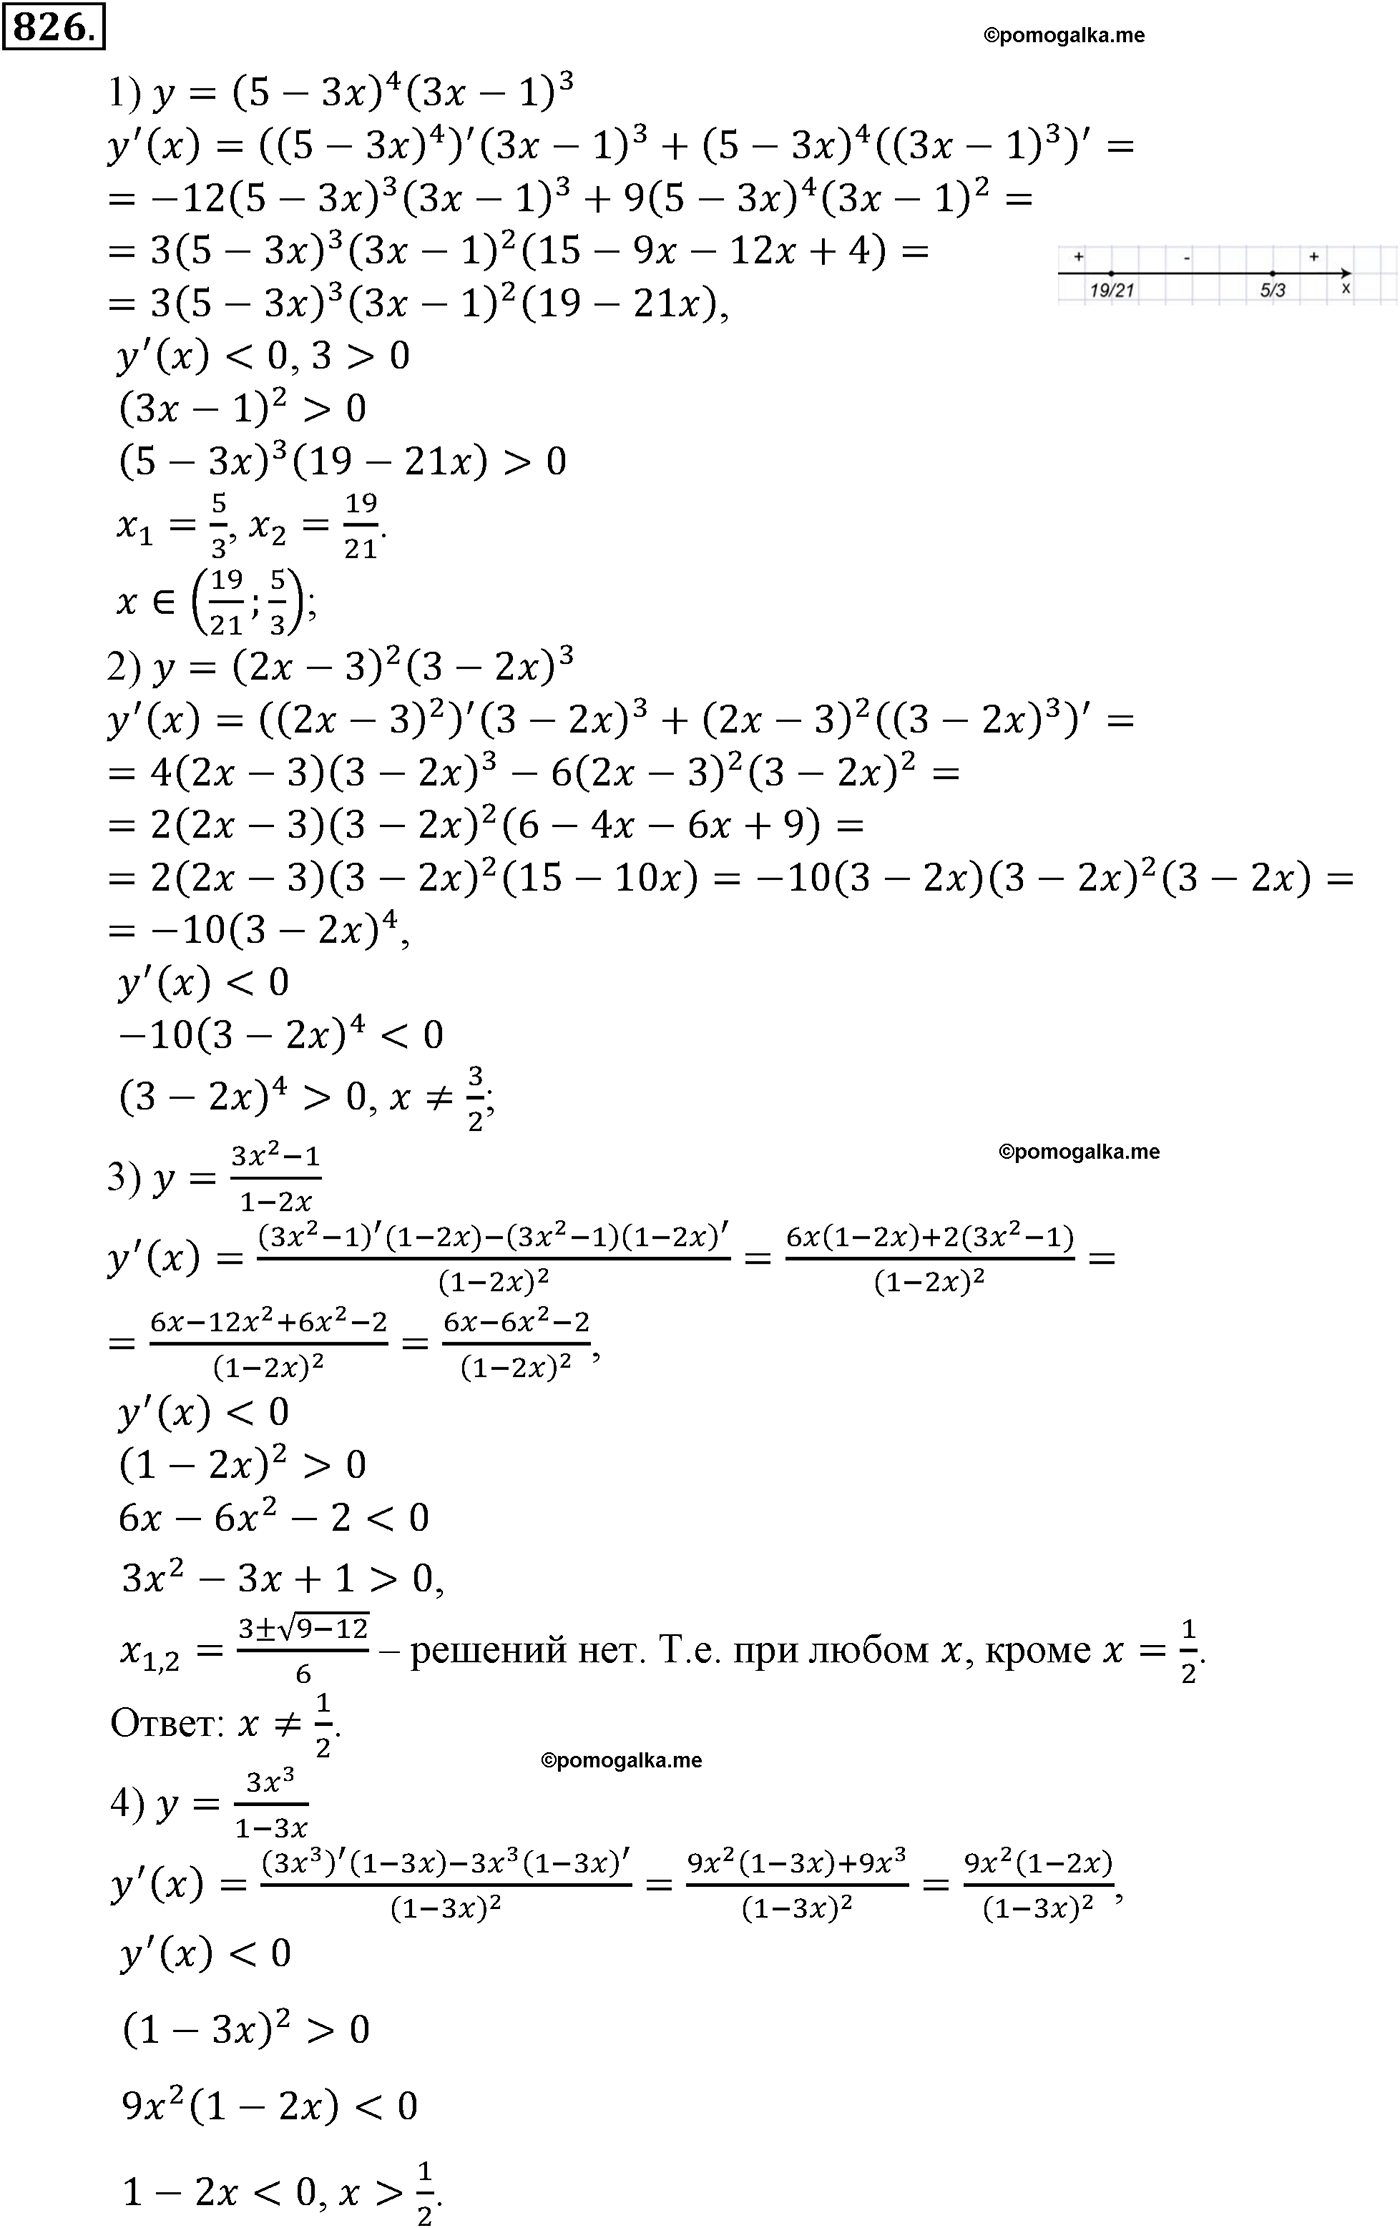 разбор задачи №826 по алгебре за 10-11 класс из учебника Алимова, Колягина